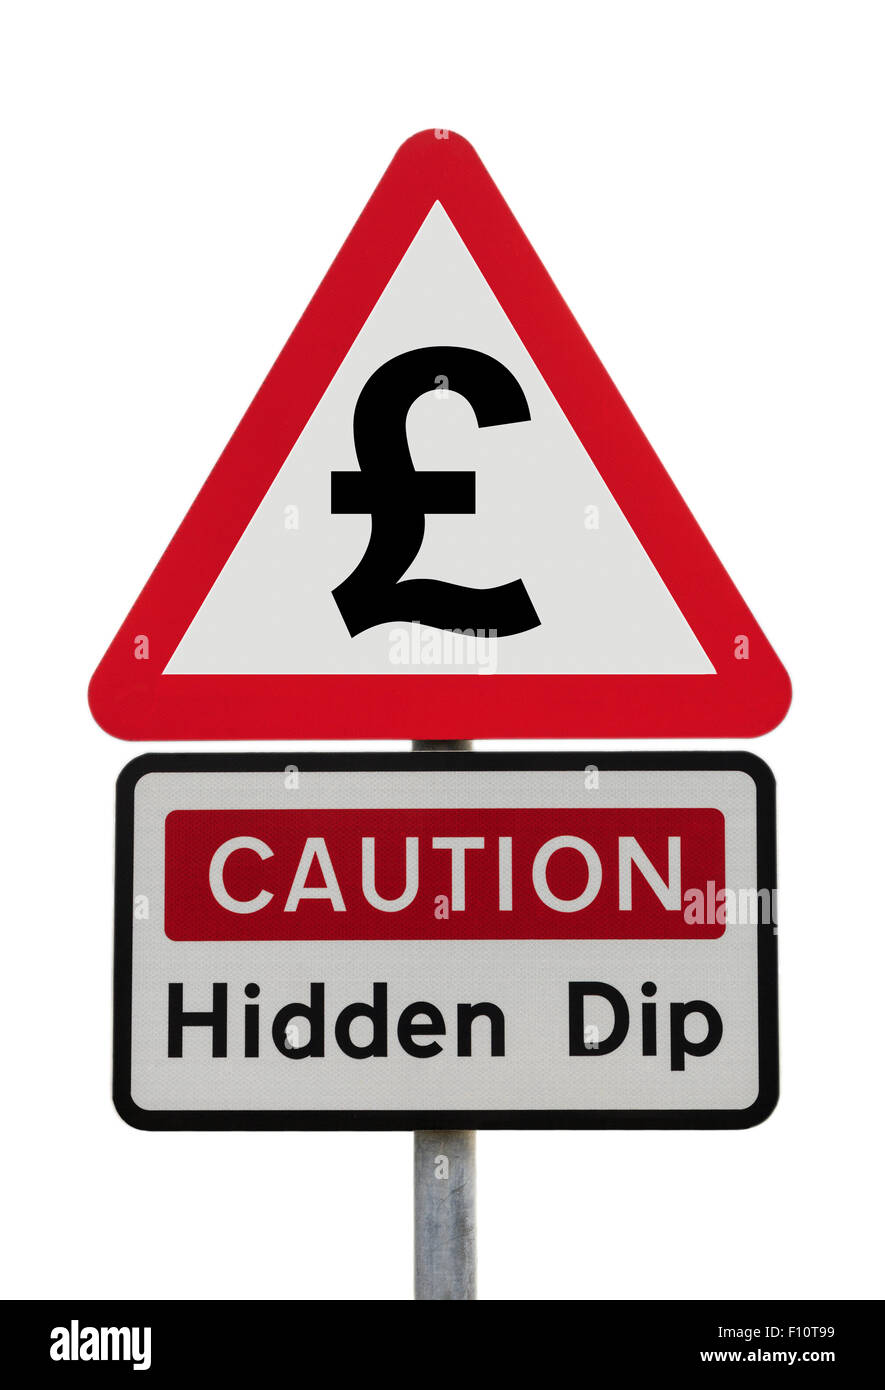 Avertissement de danger triangulaire attention plongeon caché avec le symbole de livre sterling pour illustrer la récession financière future après le concept de Brexit Angleterre Royaume-Uni Grande-Bretagne Banque D'Images